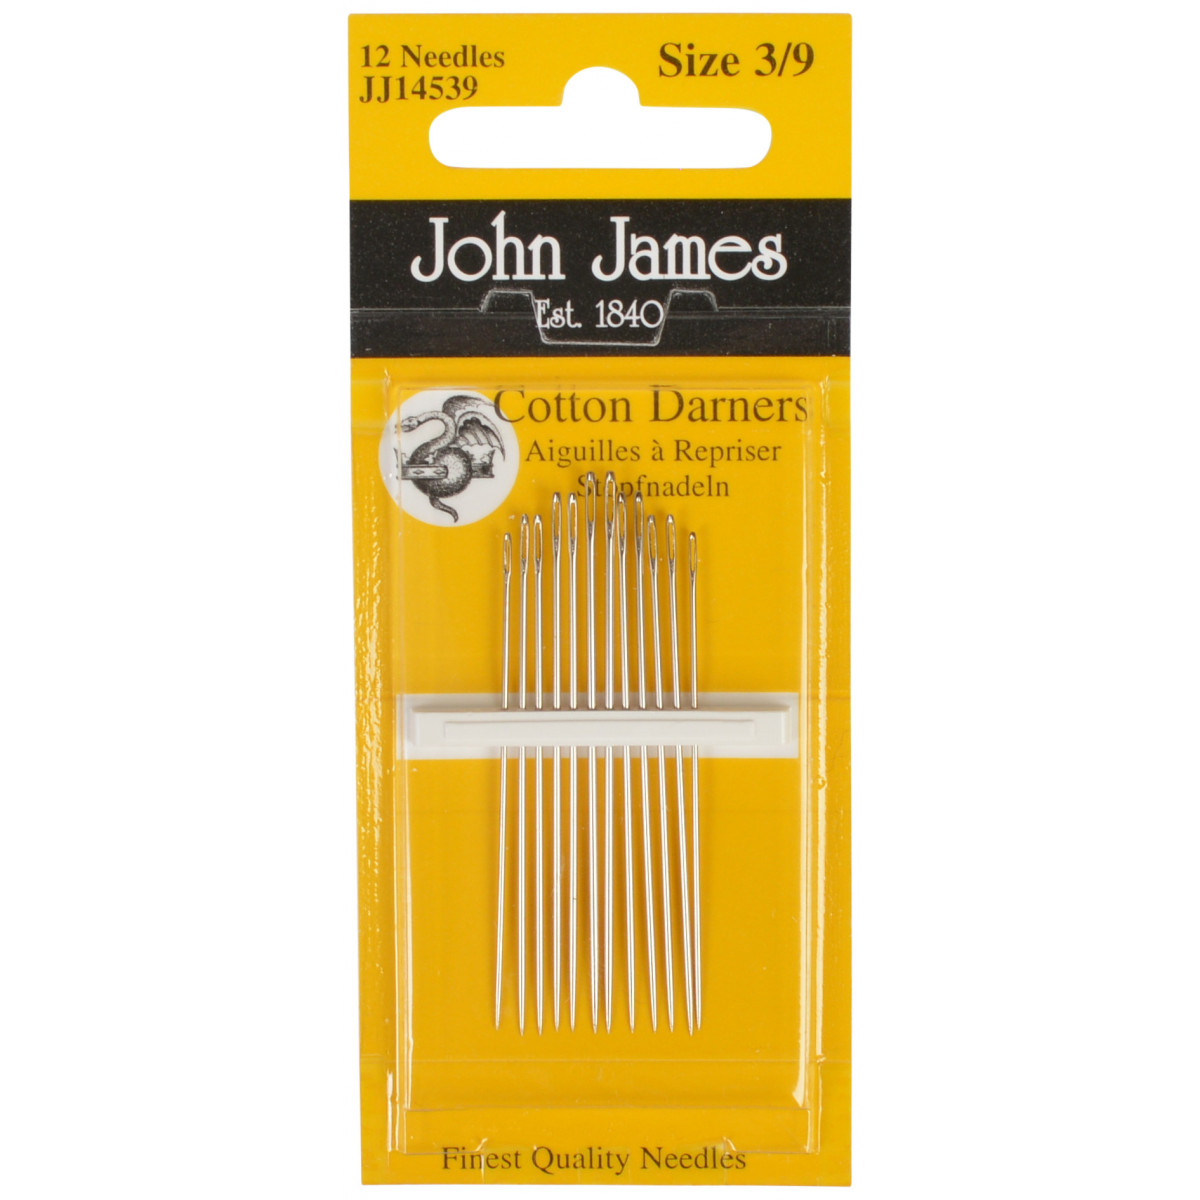 John James - Cotton Darners Size 3/9